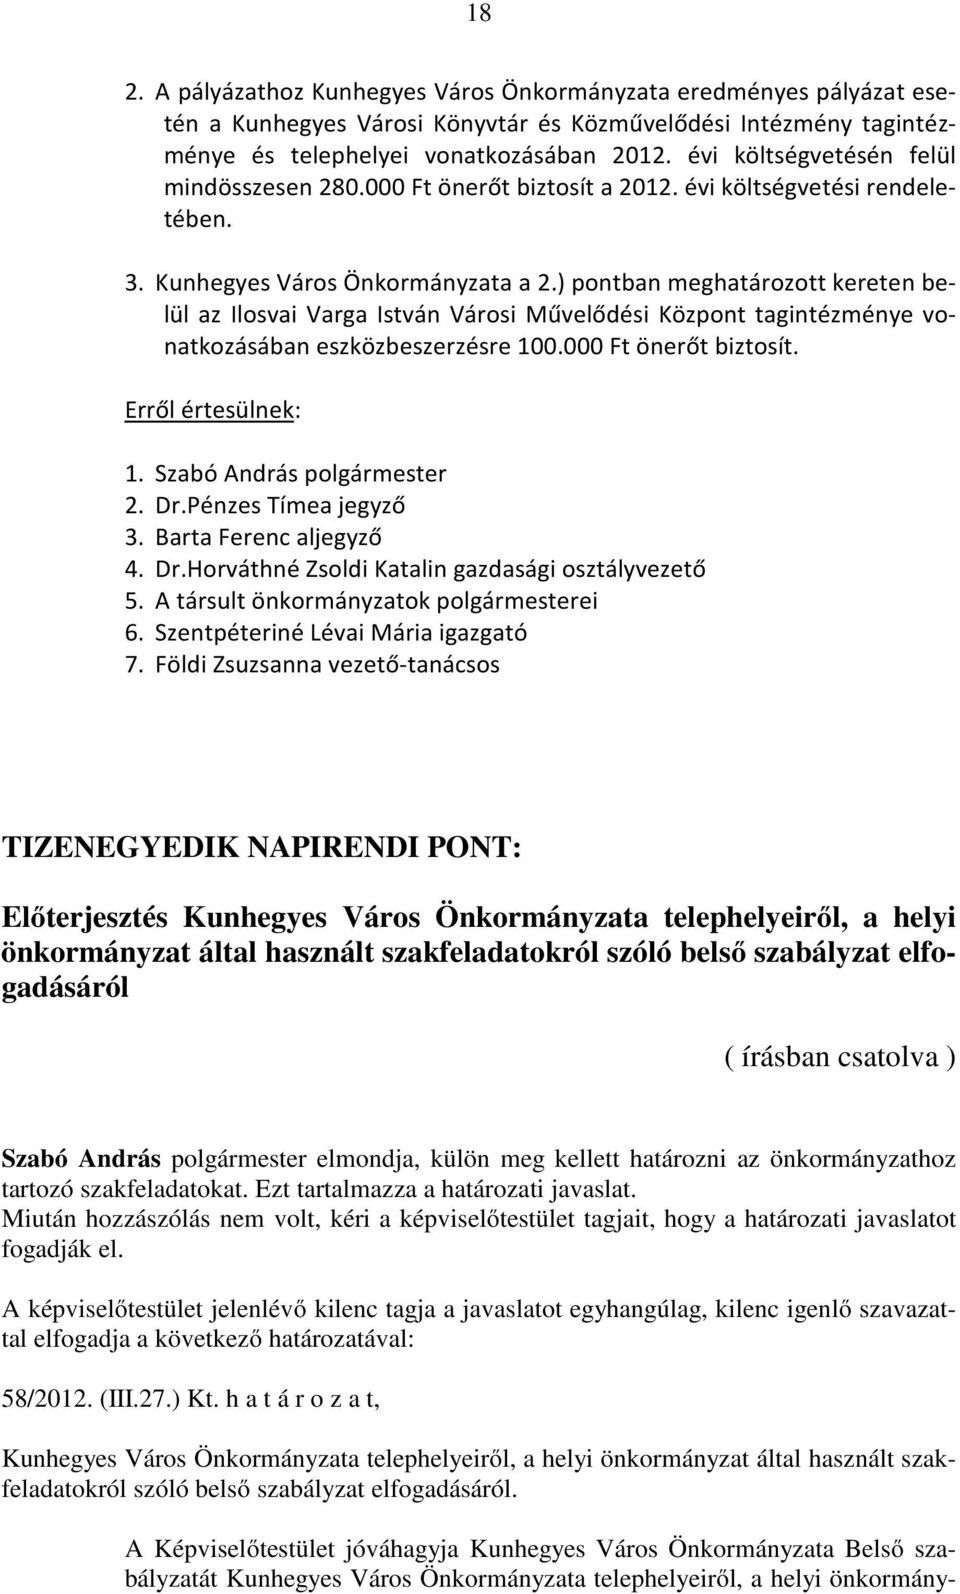 ) pontban meghatározott kereten belül az Ilosvai Varga István Városi Művelődési Központ tagintézménye vonatkozásában eszközbeszerzésre 100.000 Ft önerőt biztosít. 4. Dr.